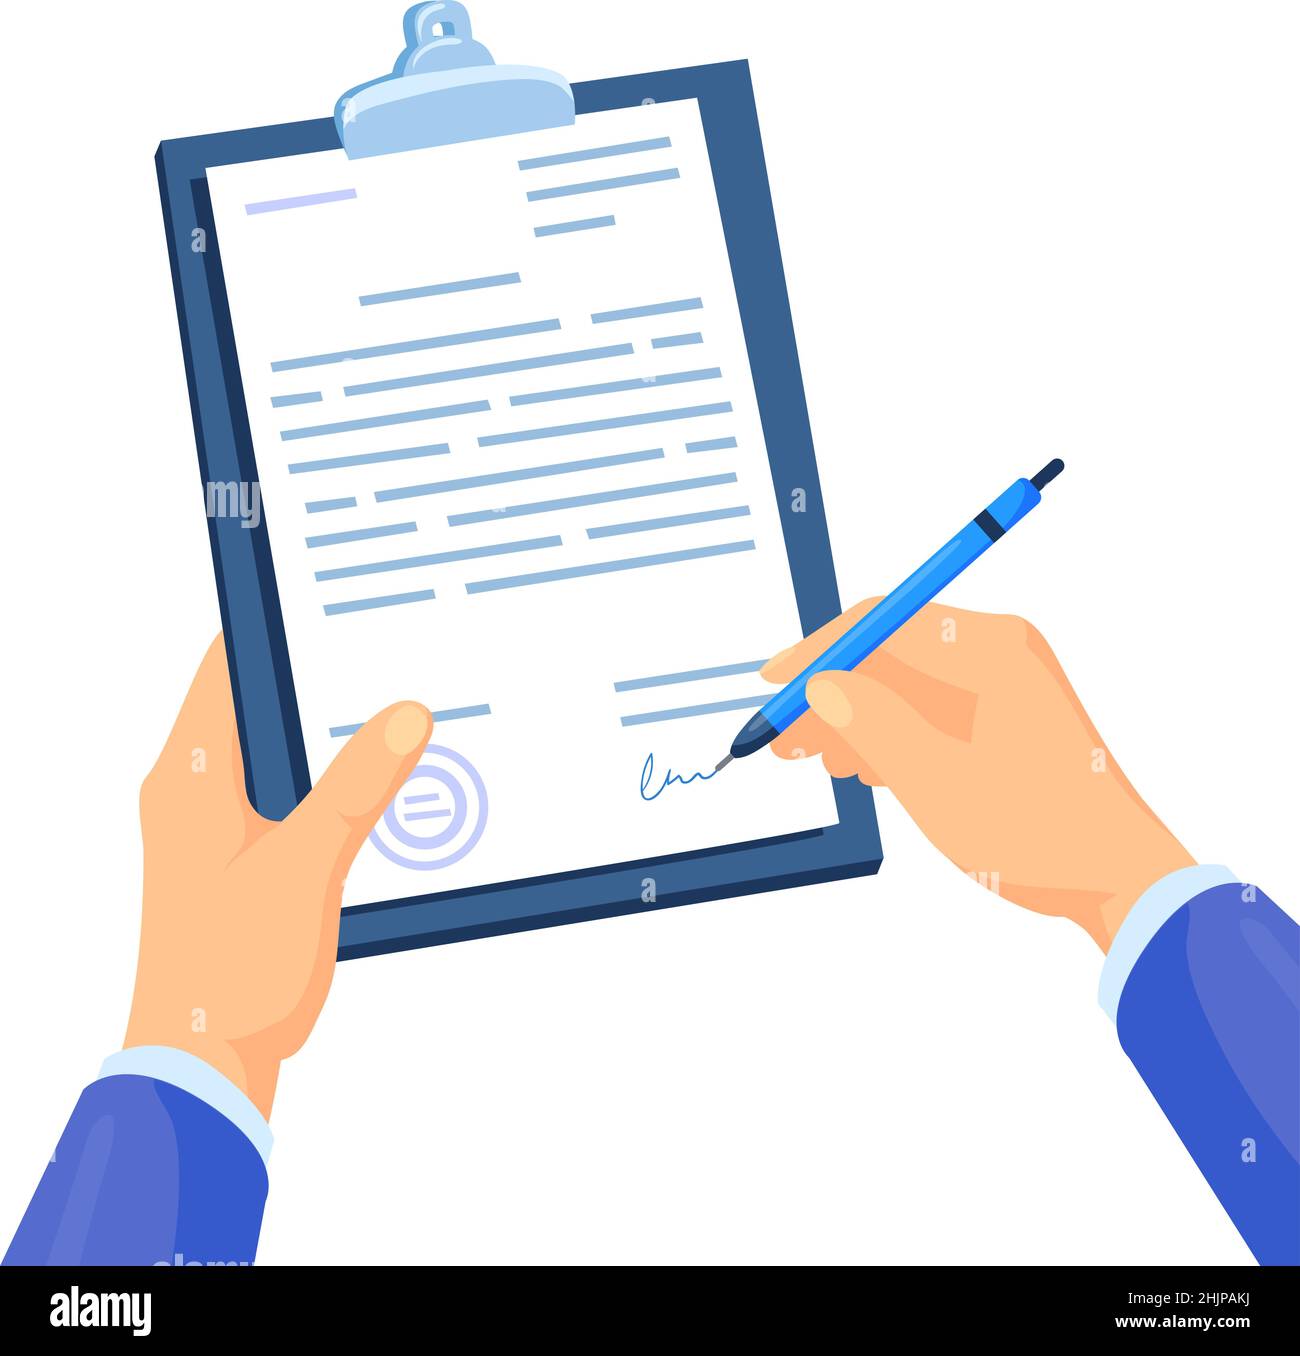 Anwalt unterzeichnet Zertifizierung. Vertragsunterzeichnung, Hand mit Stift Zeichen Papier Dokument, Symbol Job Zertifikat oder rechtliche Vereinbarung, Cartoon-Vektor-Illustration. Vertragsvertrag, Unterschriftsdokument Stock Vektor